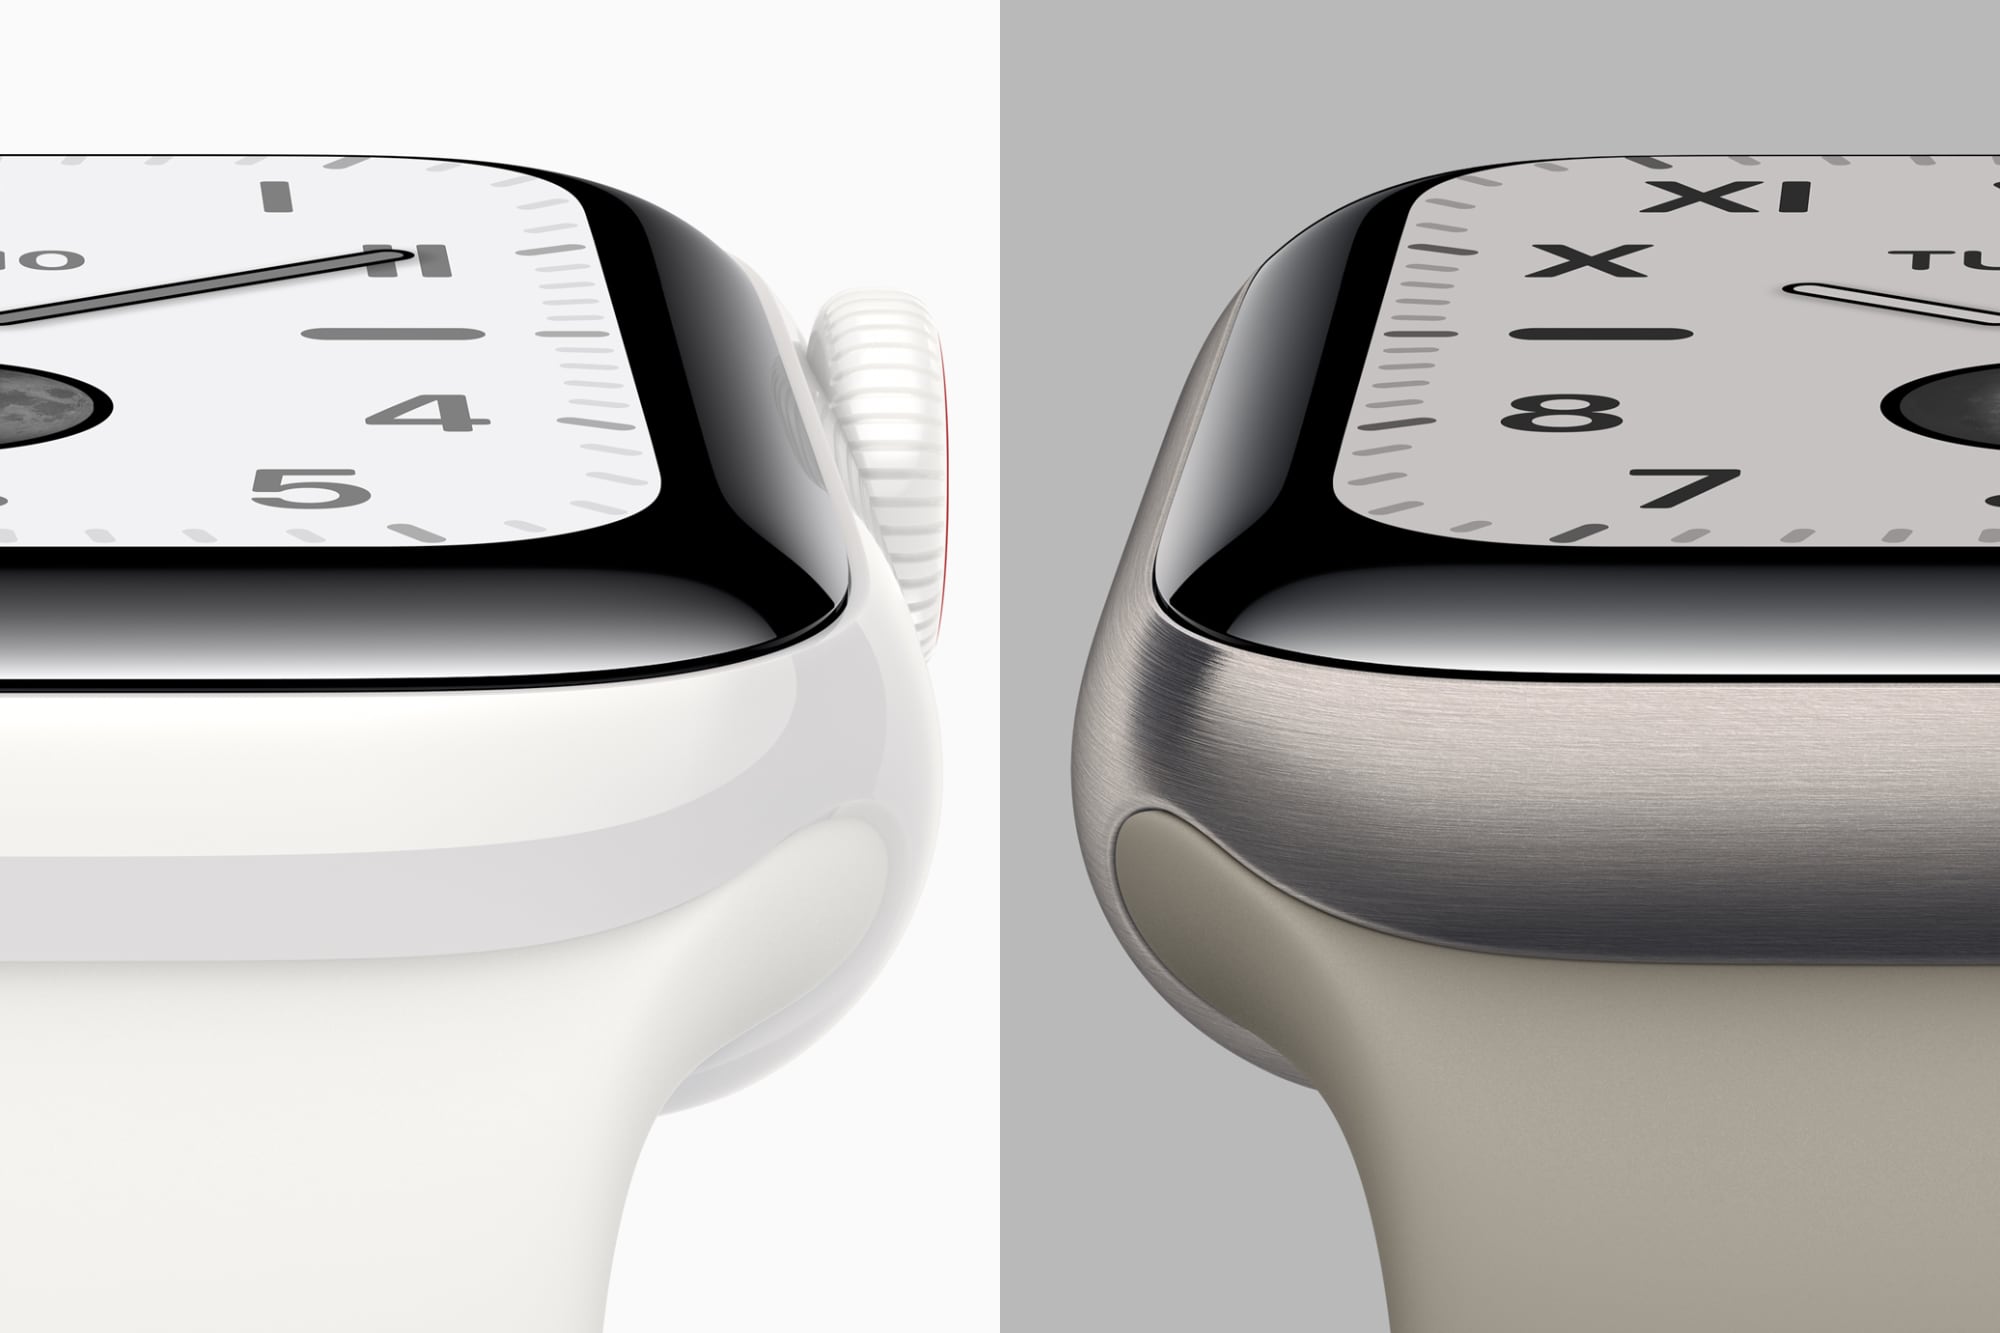 Apple Watch Ceramic vs Titanium